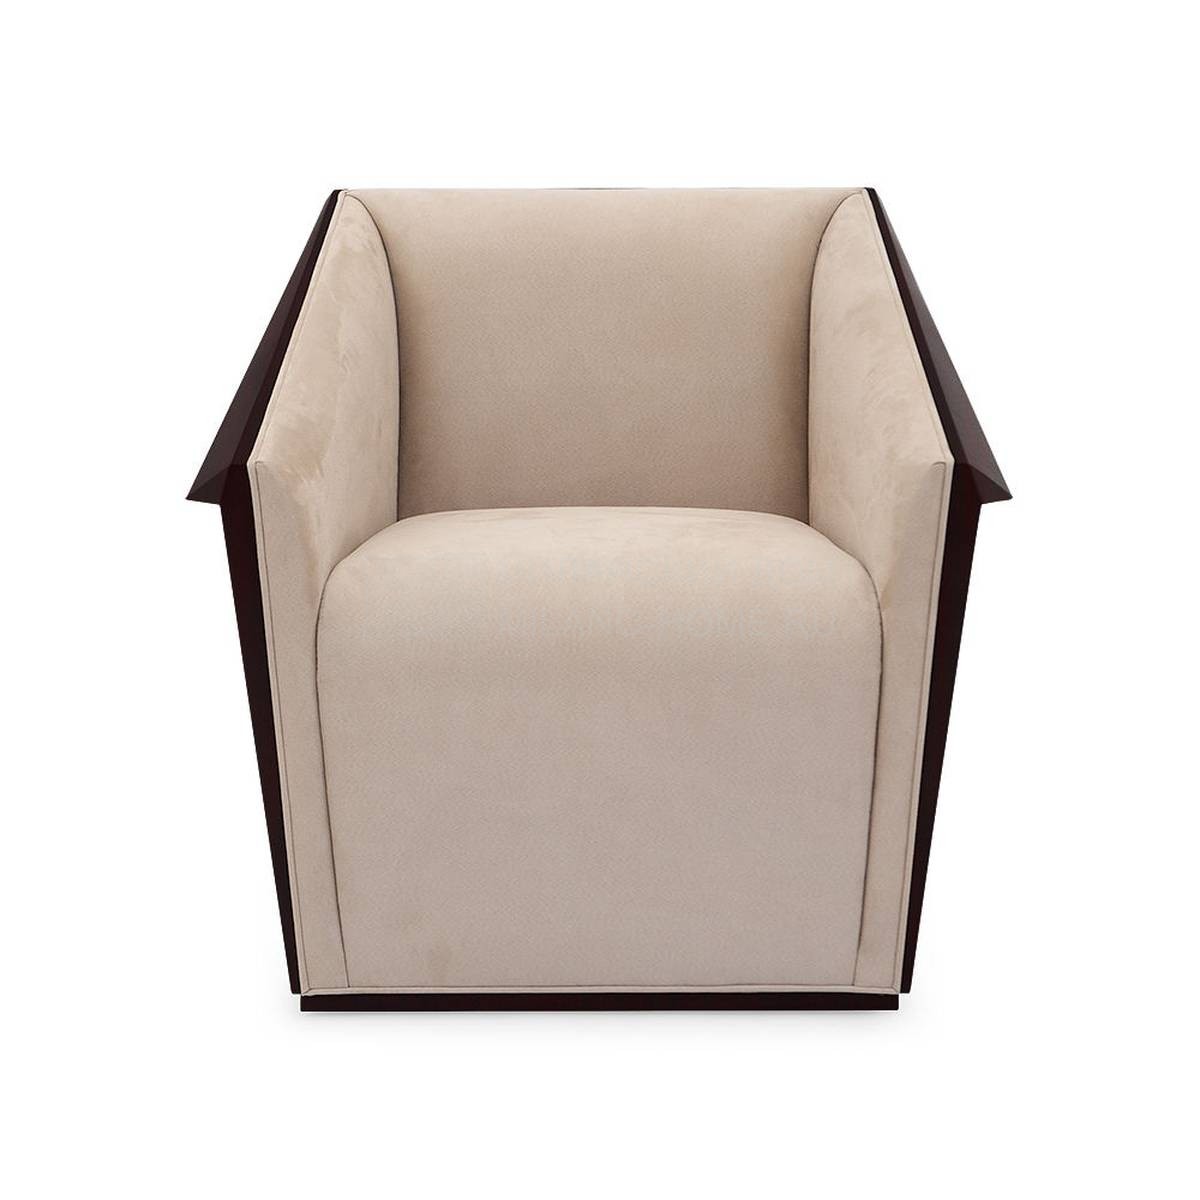 Кресло Emile armchair из США фабрики CHRISTOPHER GUY